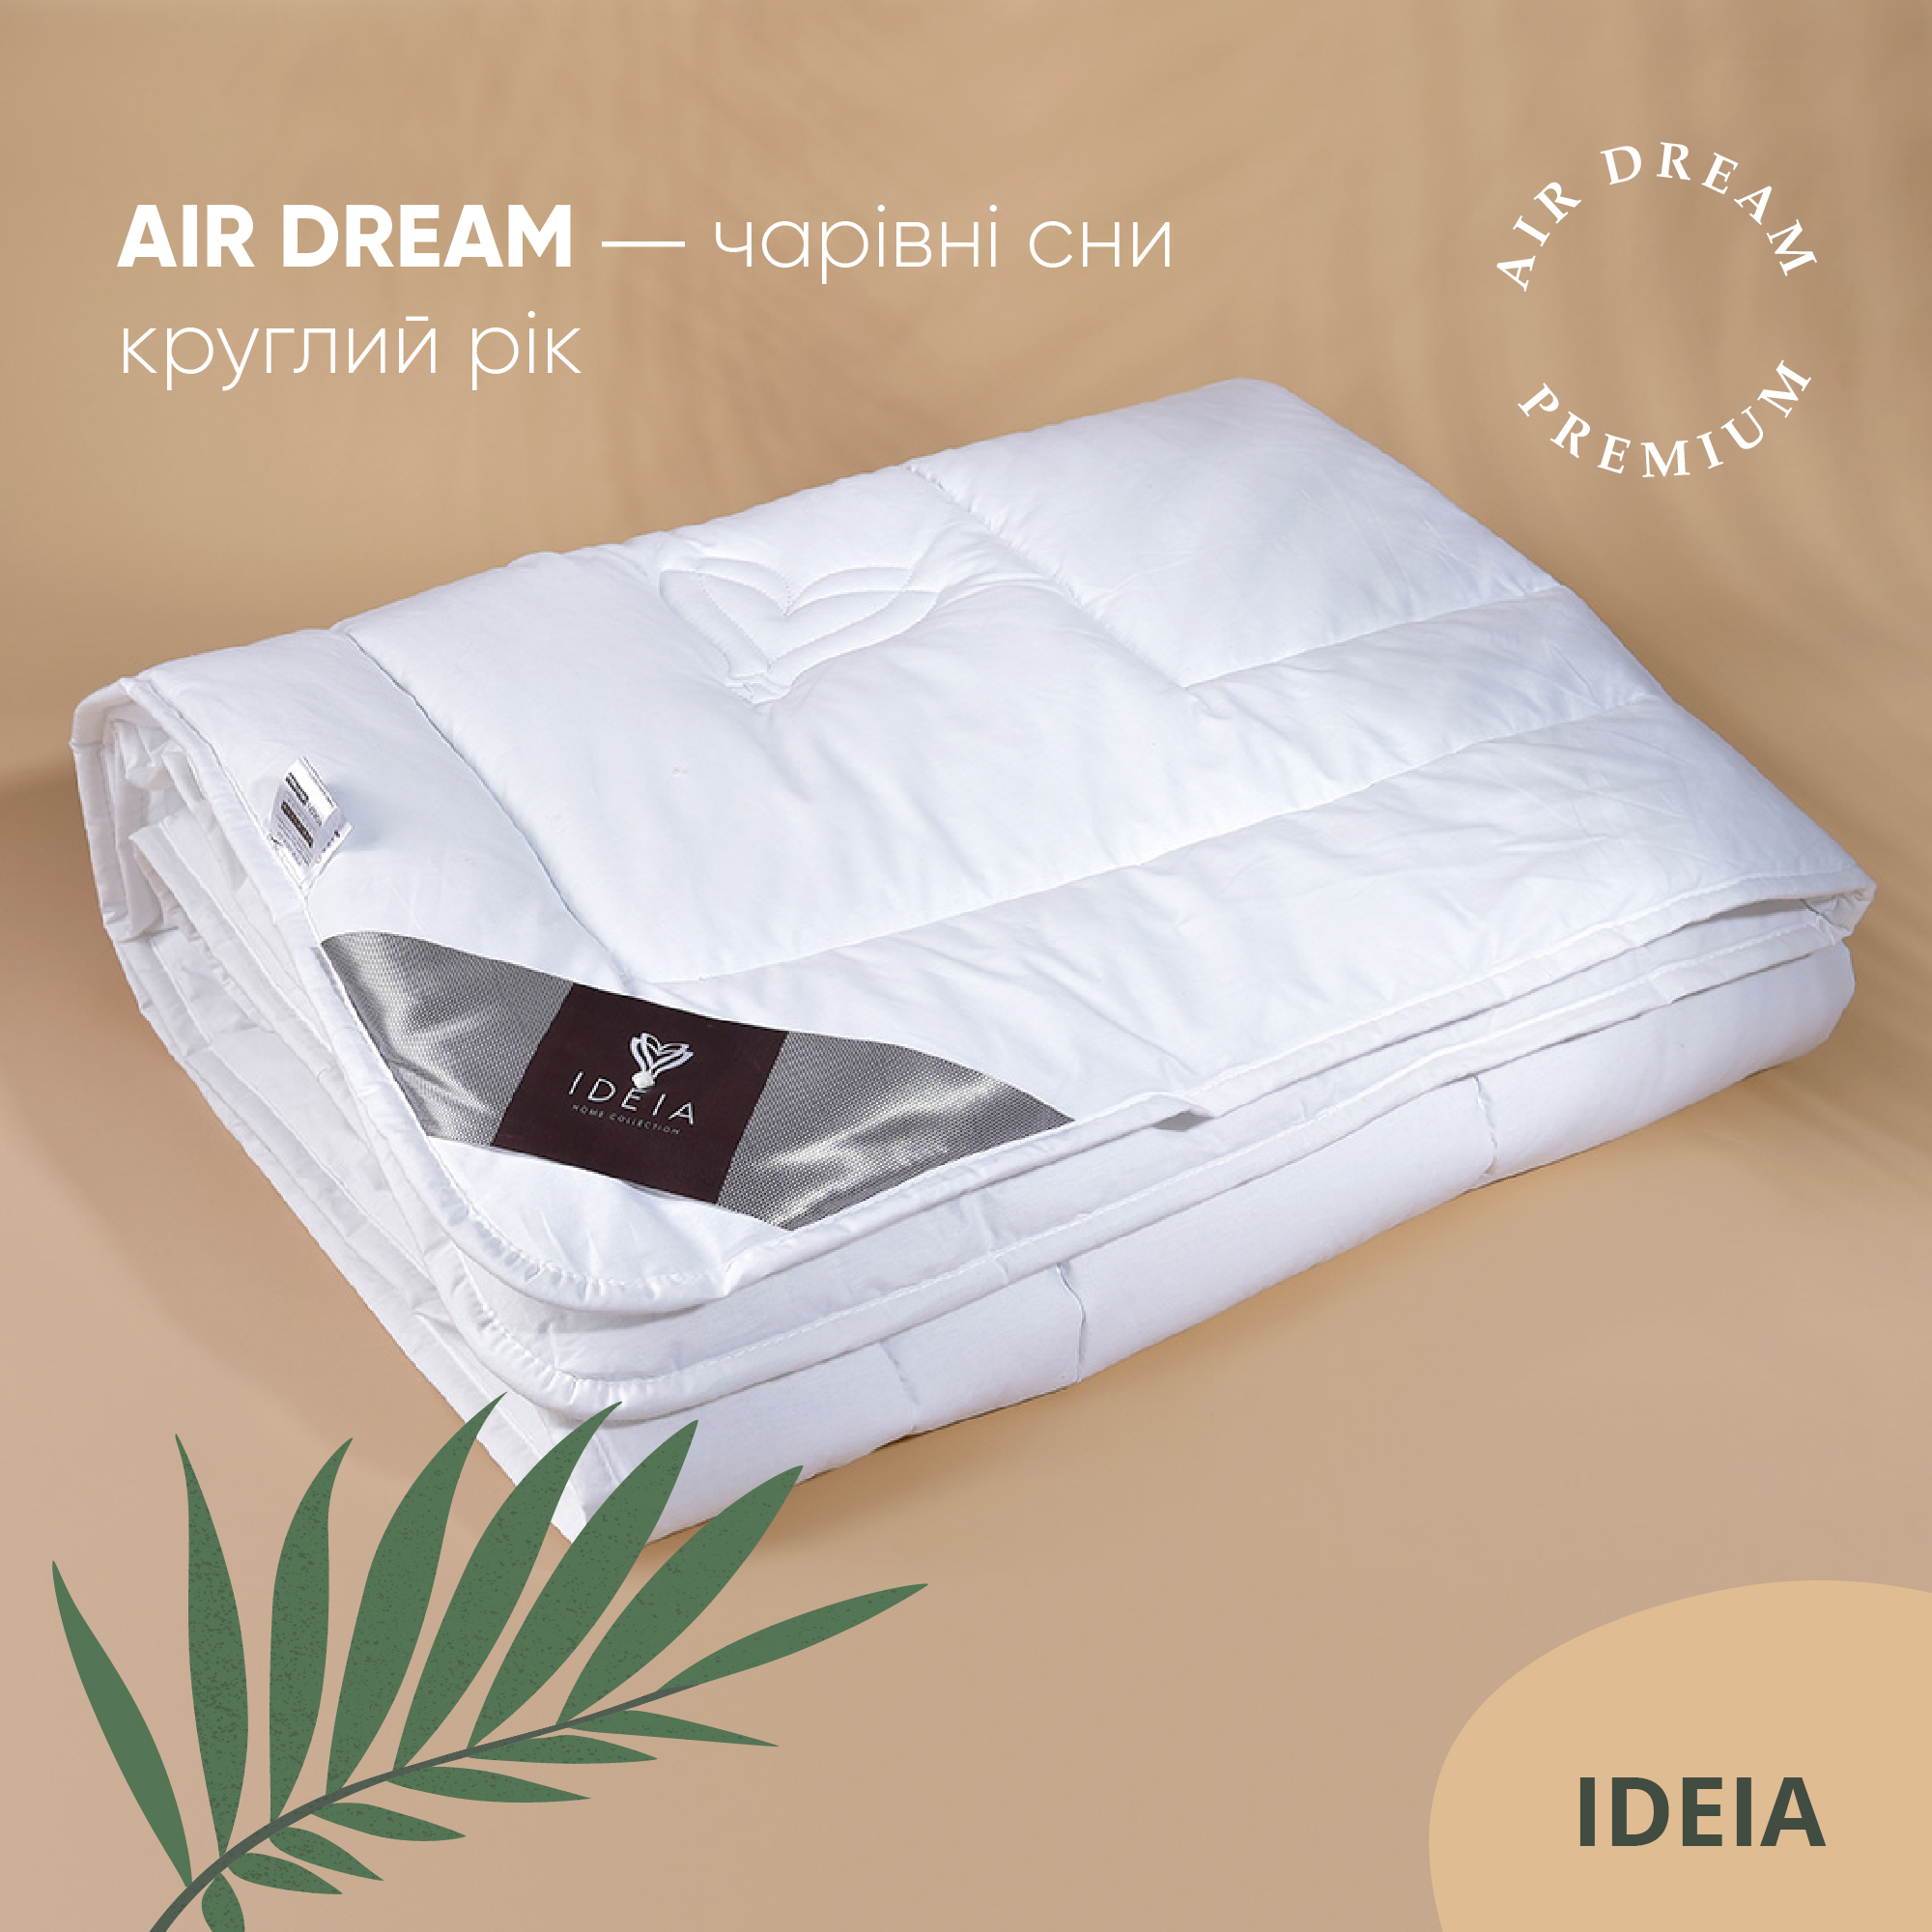 Ковдра Ideia Air Dream Premium літня, 210х175, білий (8-11697) - фото 4